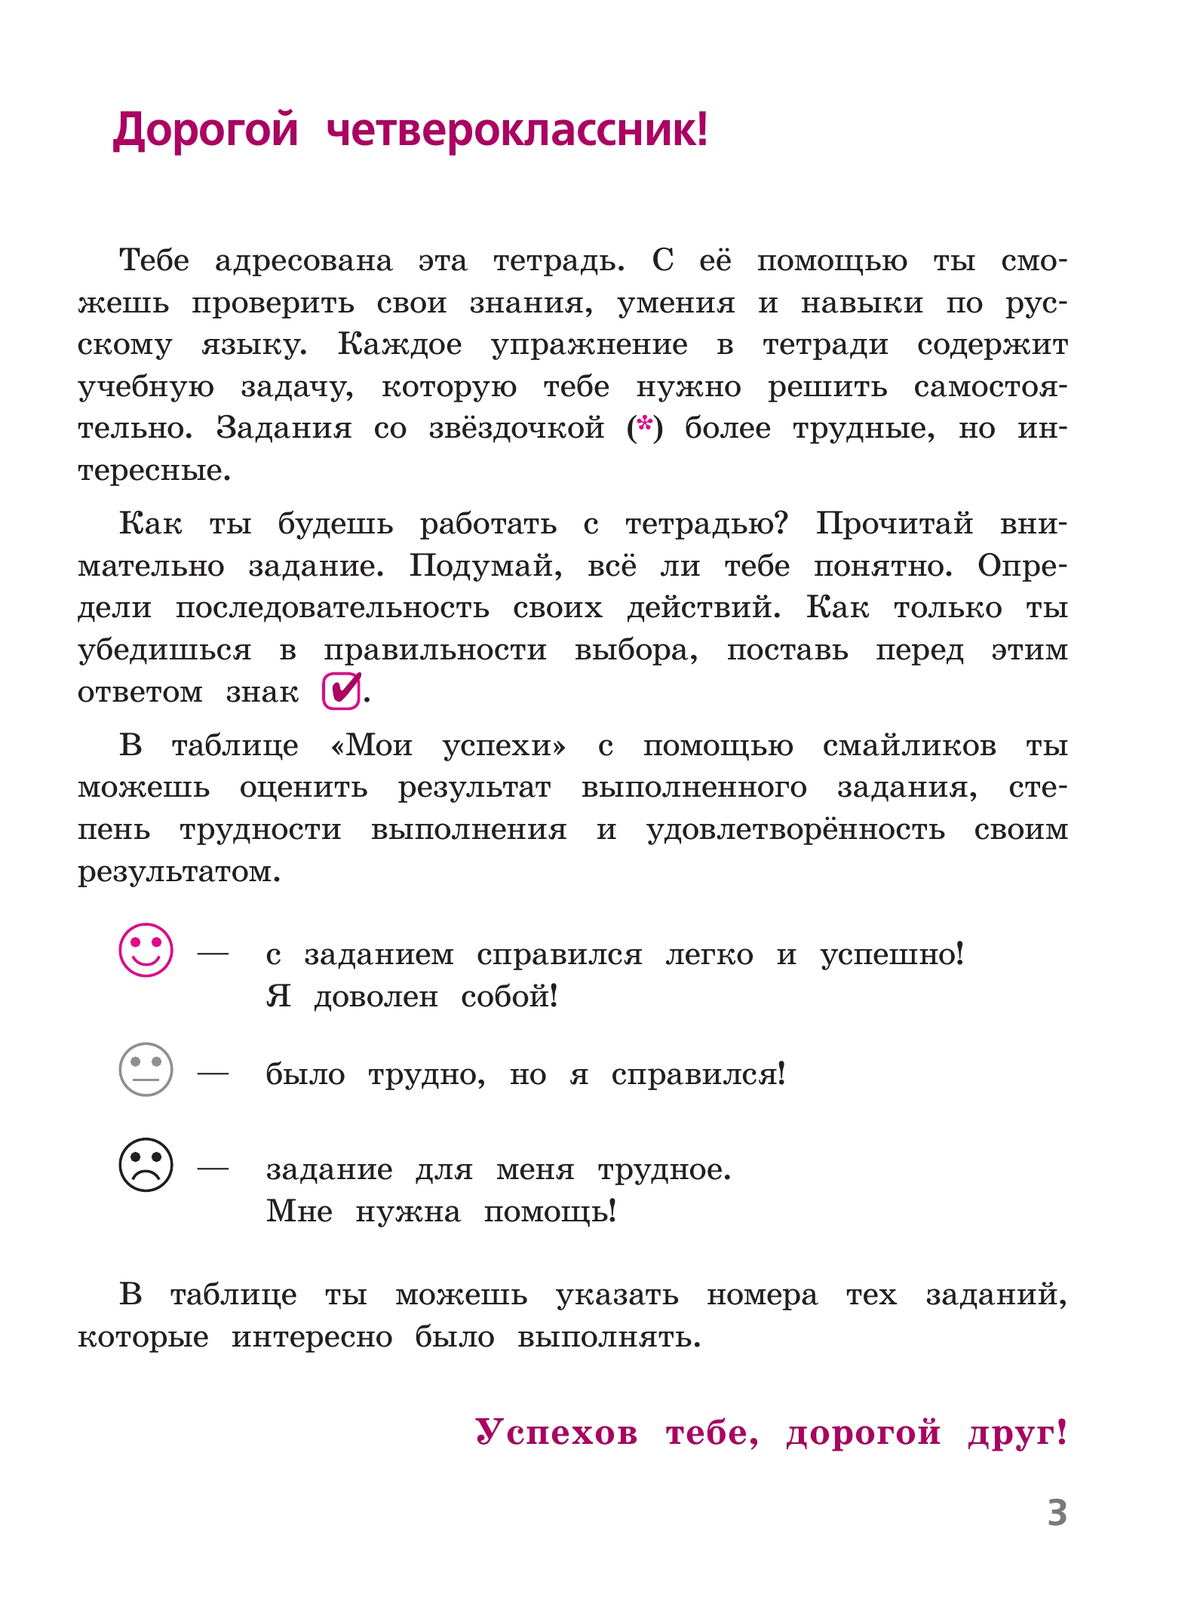 Русский язык. Тетрадь учебных достижений. 4 класс 2